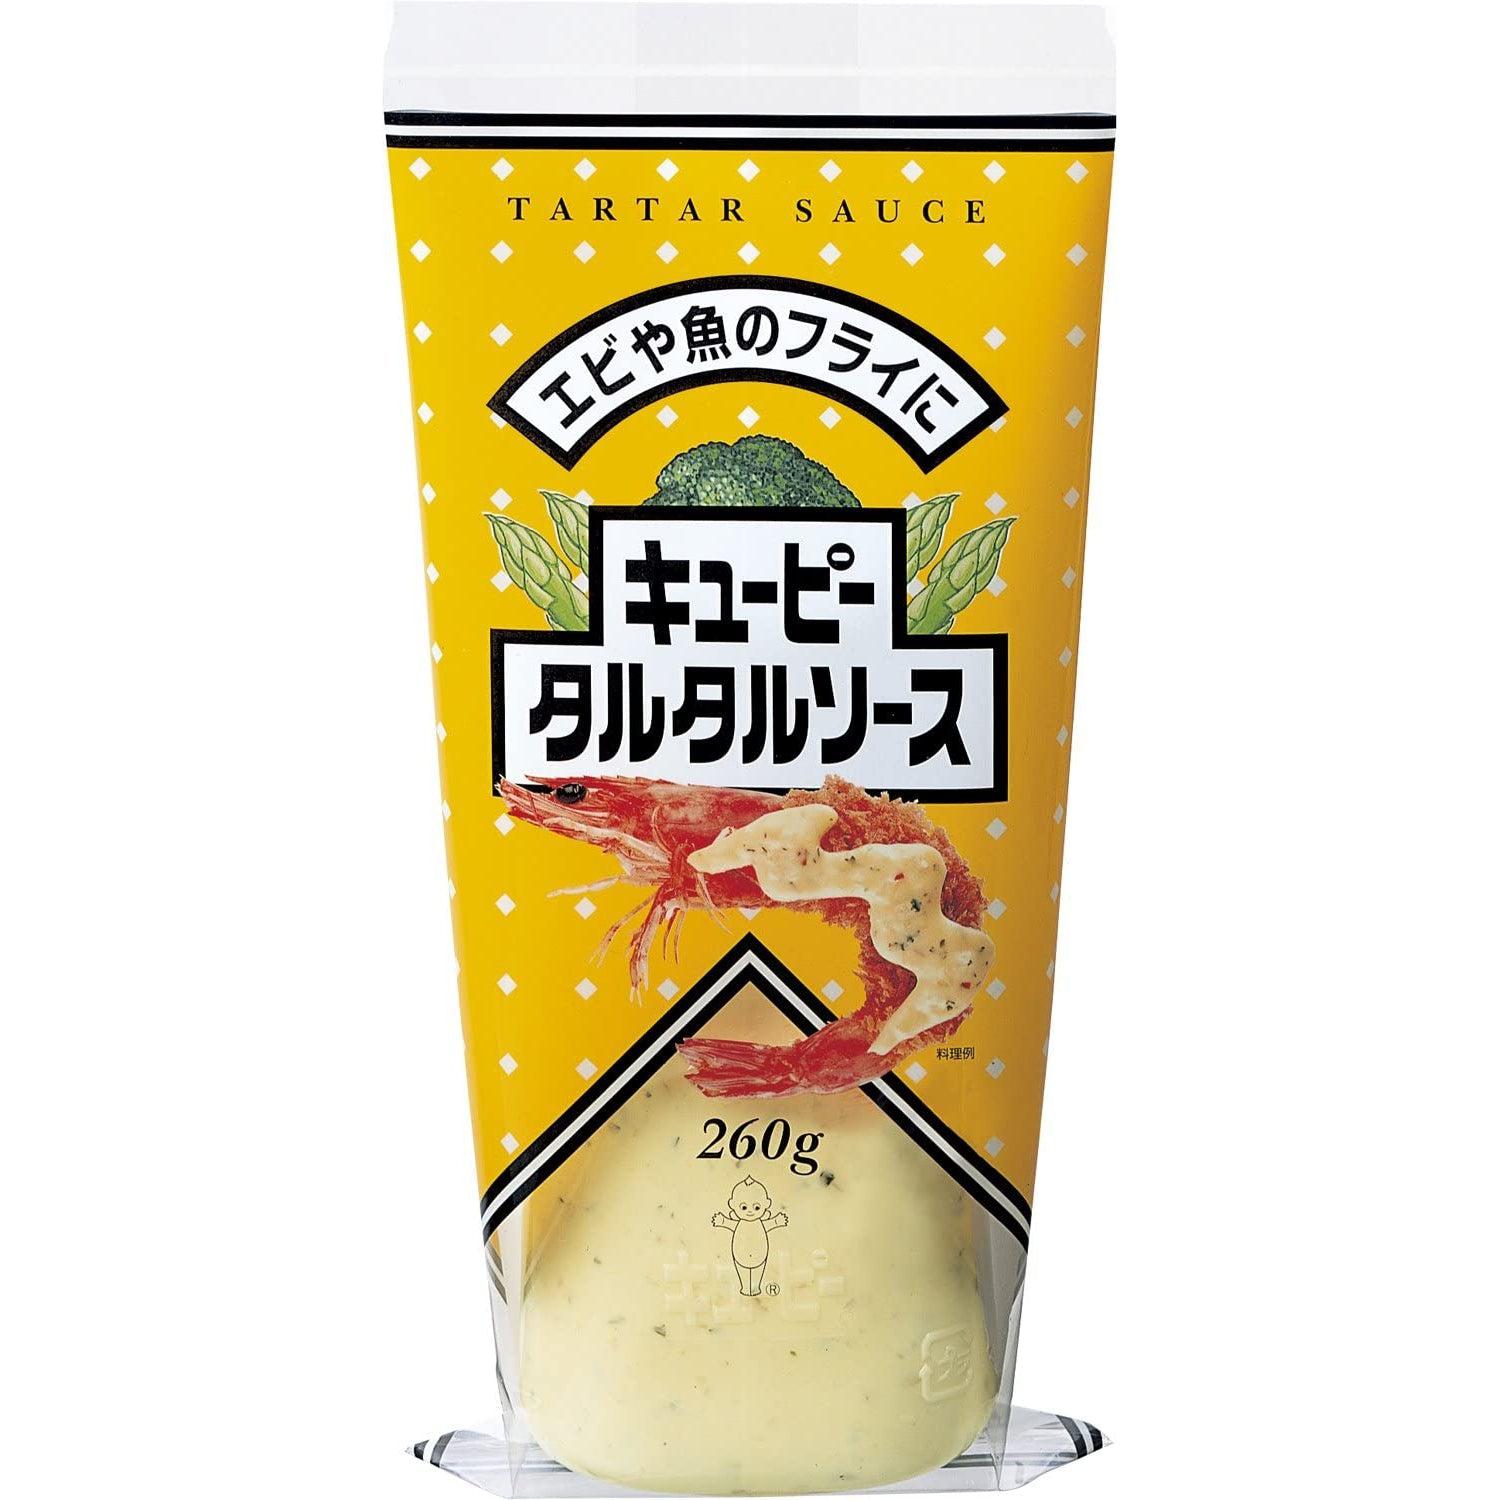 Kewpie Japanese Tartar Sauce 260g, Japanese Taste